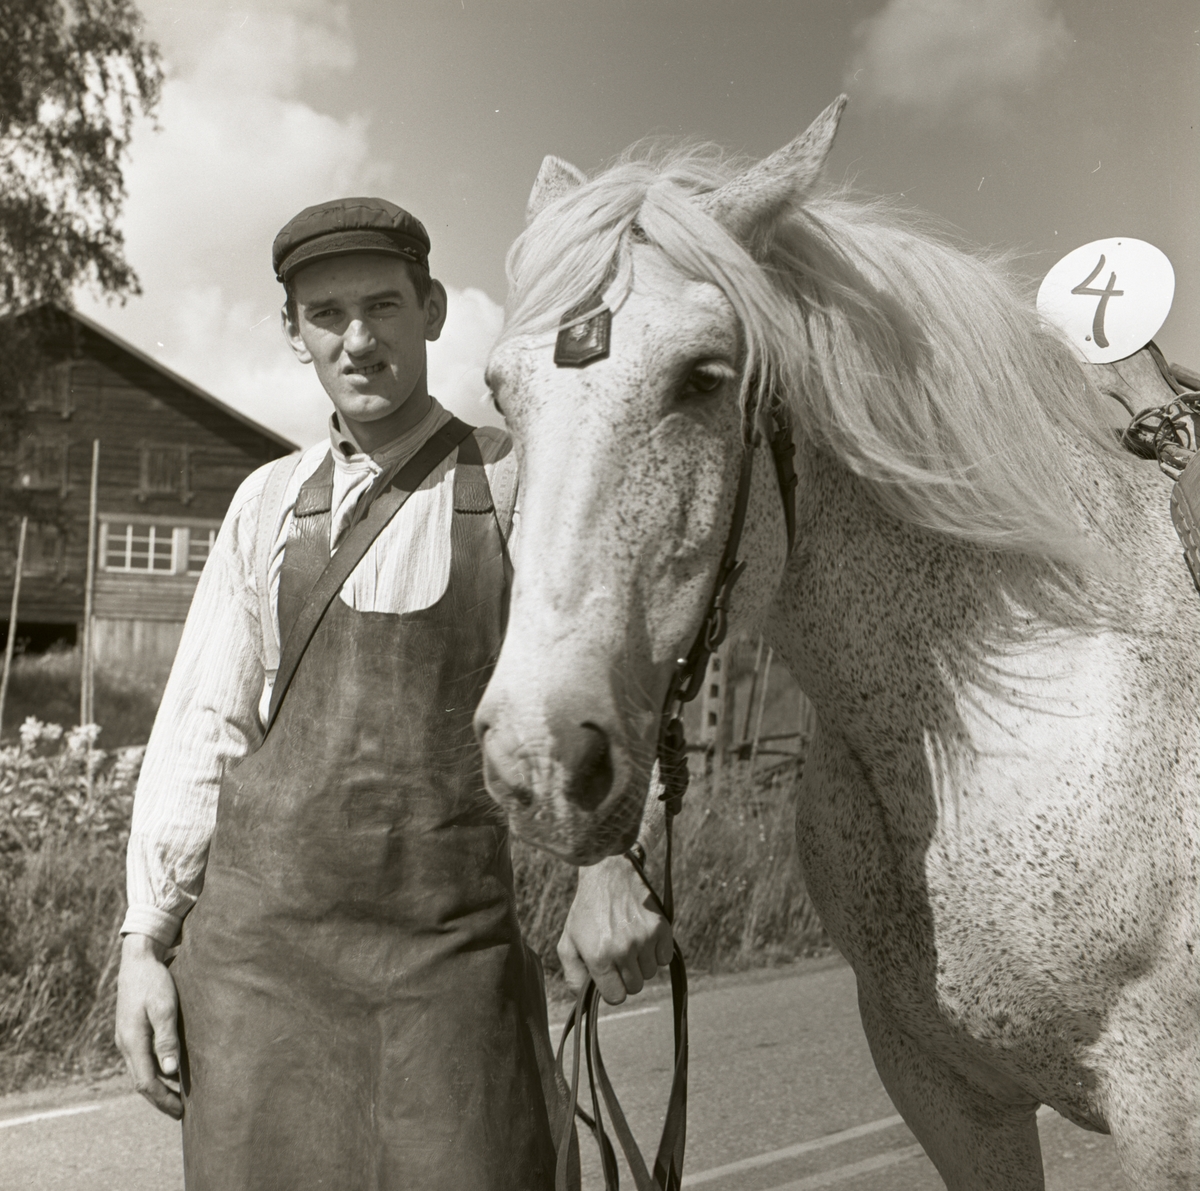 En deltagare i Hembygdsfestens karneval i Rengsjö. Han är iklädd keps och skinnförkläde samt står bredvid en häst, 22 juli 1962.